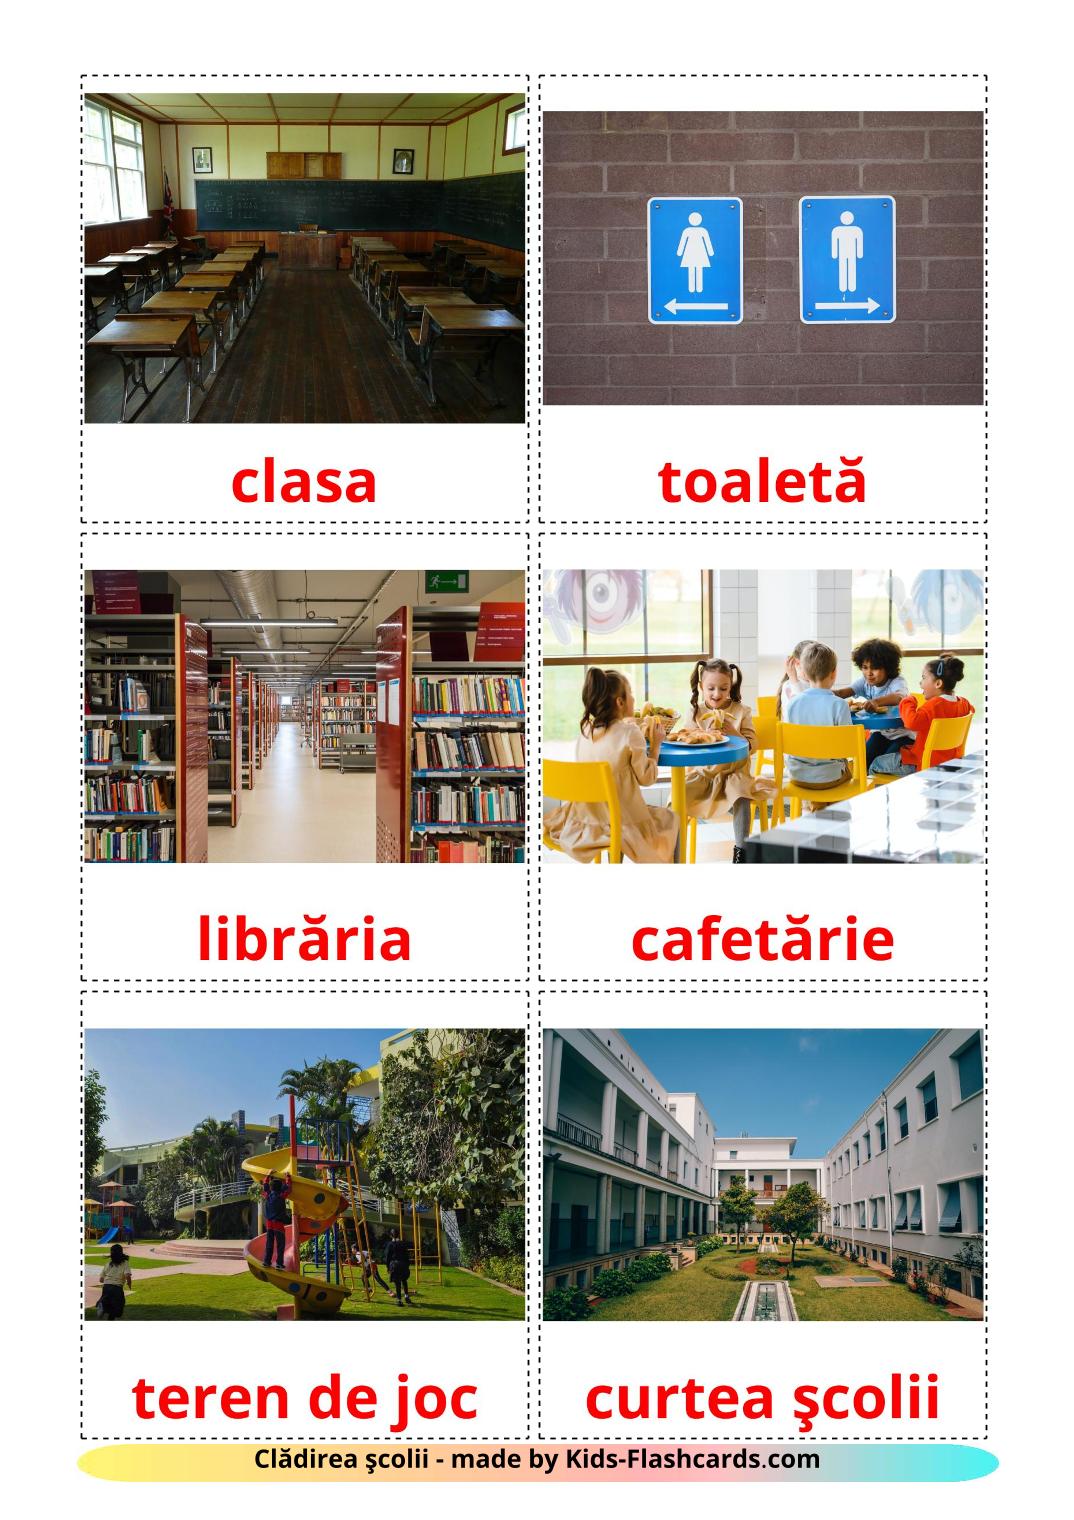 Edificio escolar - 17 fichas de rumano para imprimir gratis 